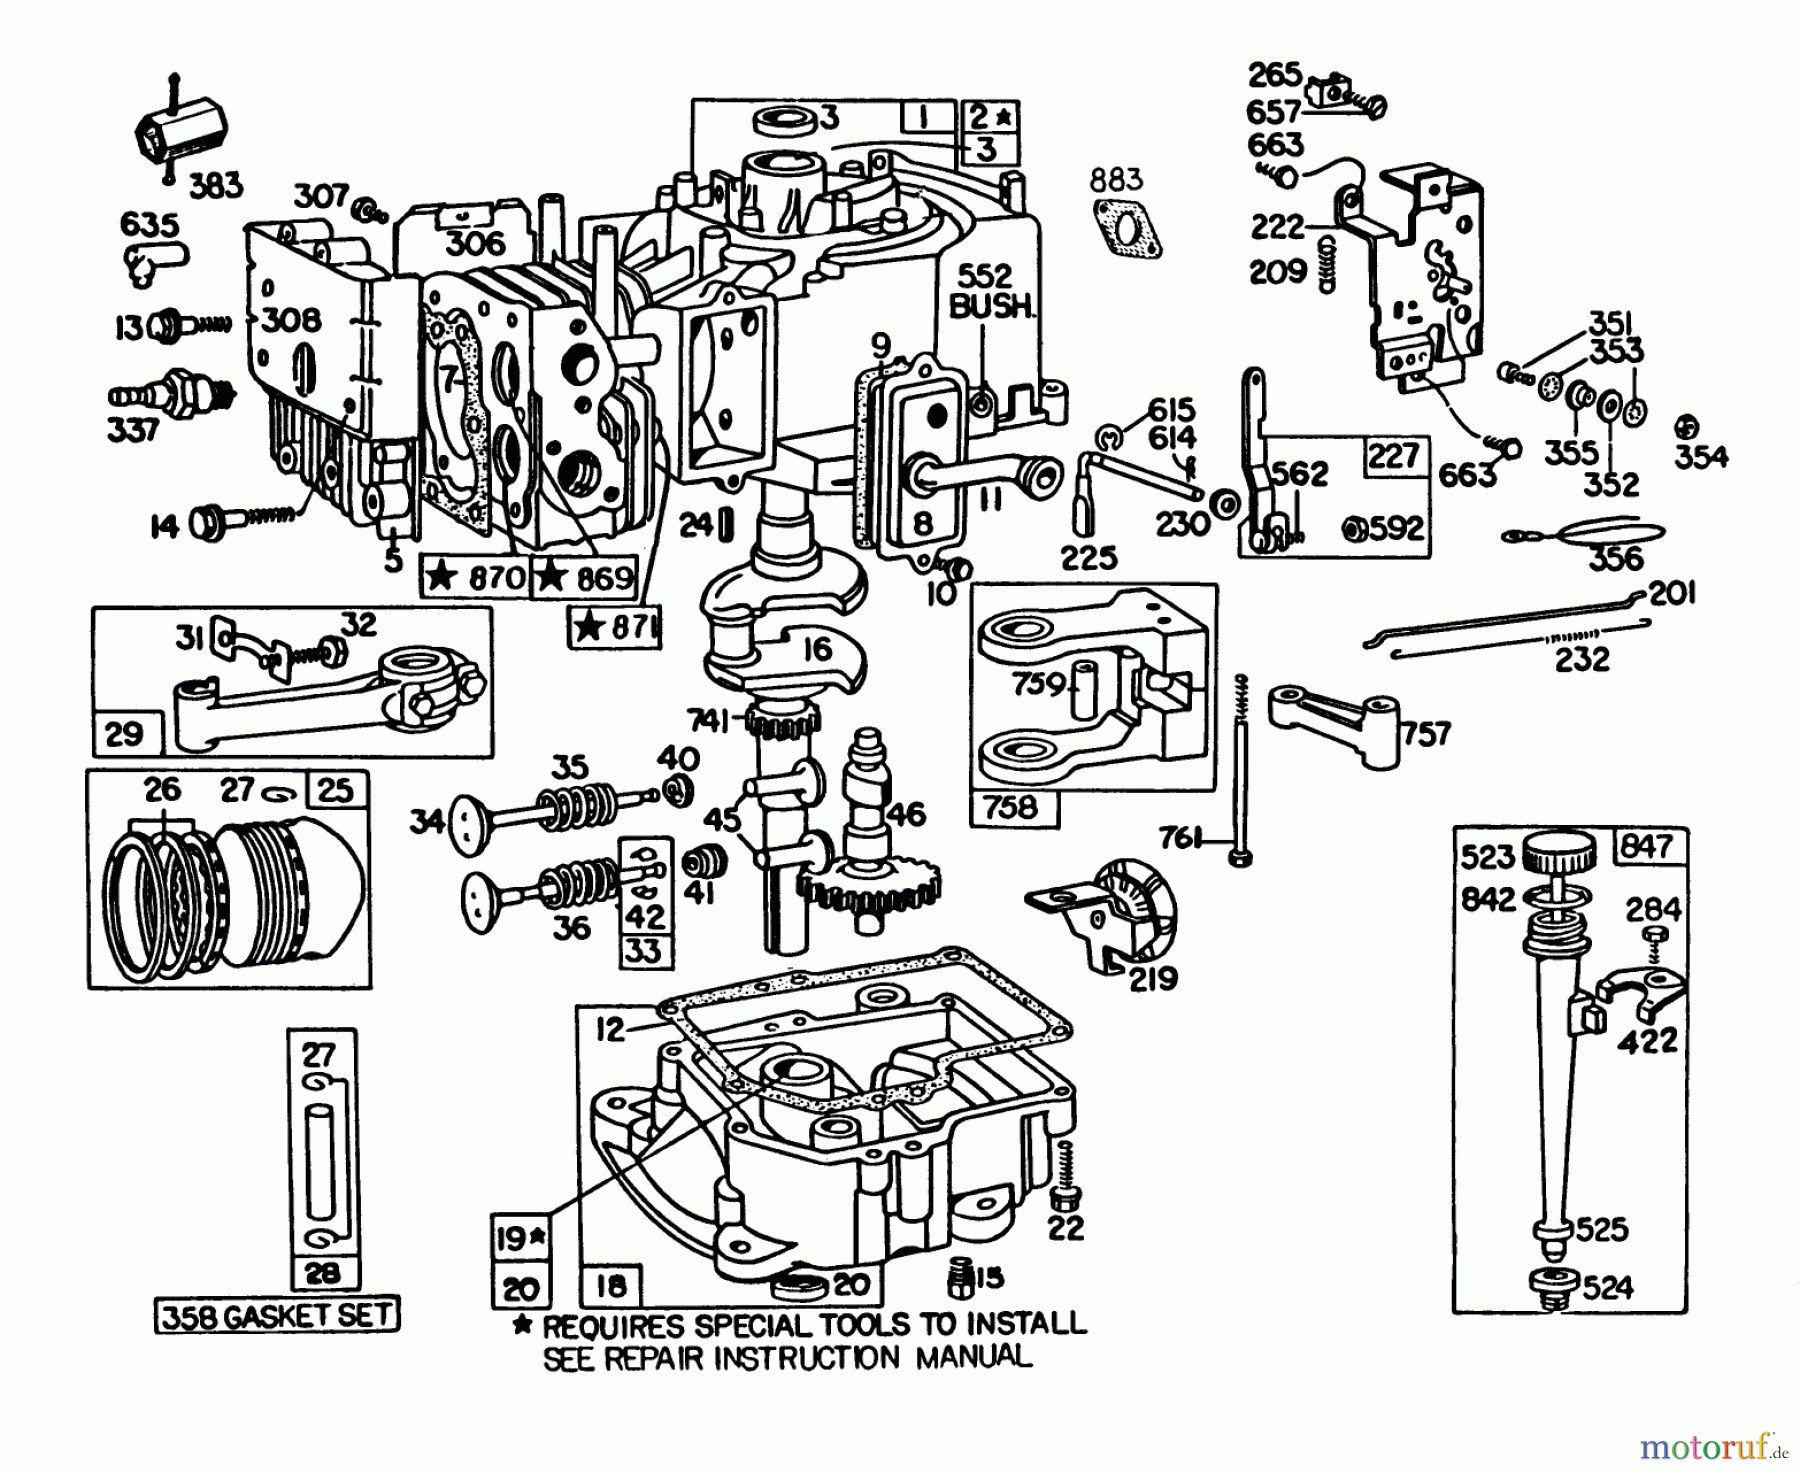  Toro Neu Mowers, Lawn & Garden Tractor Seite 1 57360 (11-32) - Toro 11-32 Lawn Tractor, 1985 (5000001-5999999) ENGINE BRIGGS & STRATTON MODEL 191707-5816-01 (MODEL 57300)